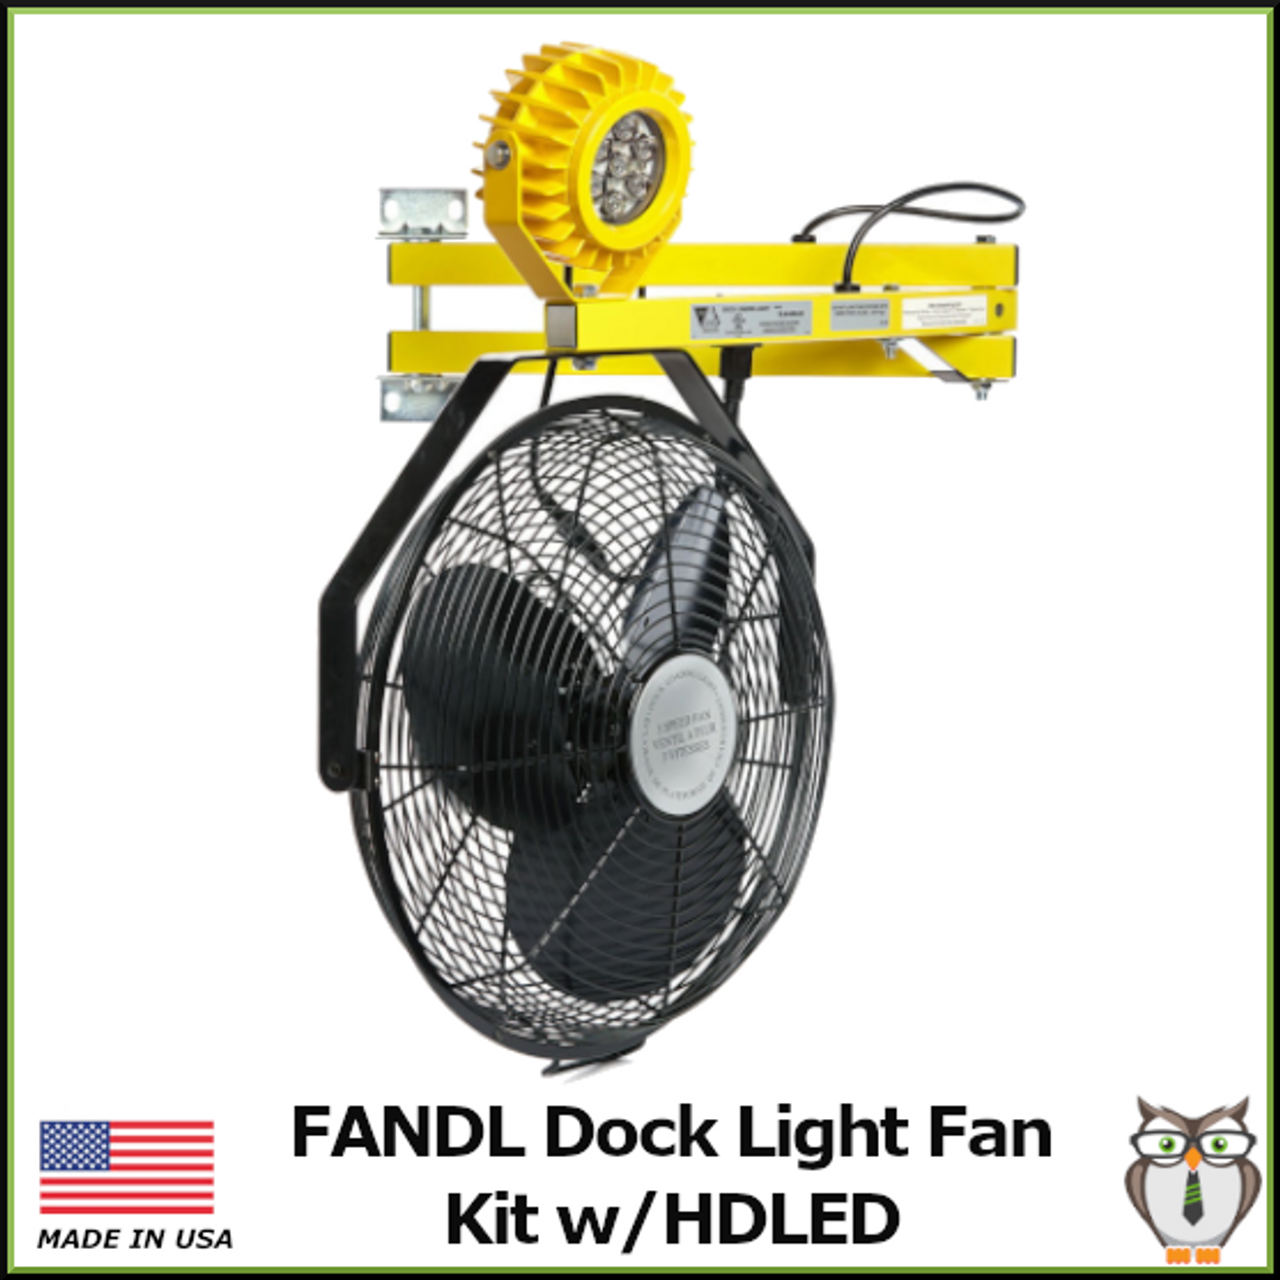 FANDL Dock Light Fan Kit with Heavy Duty Aluminum Lamp Head